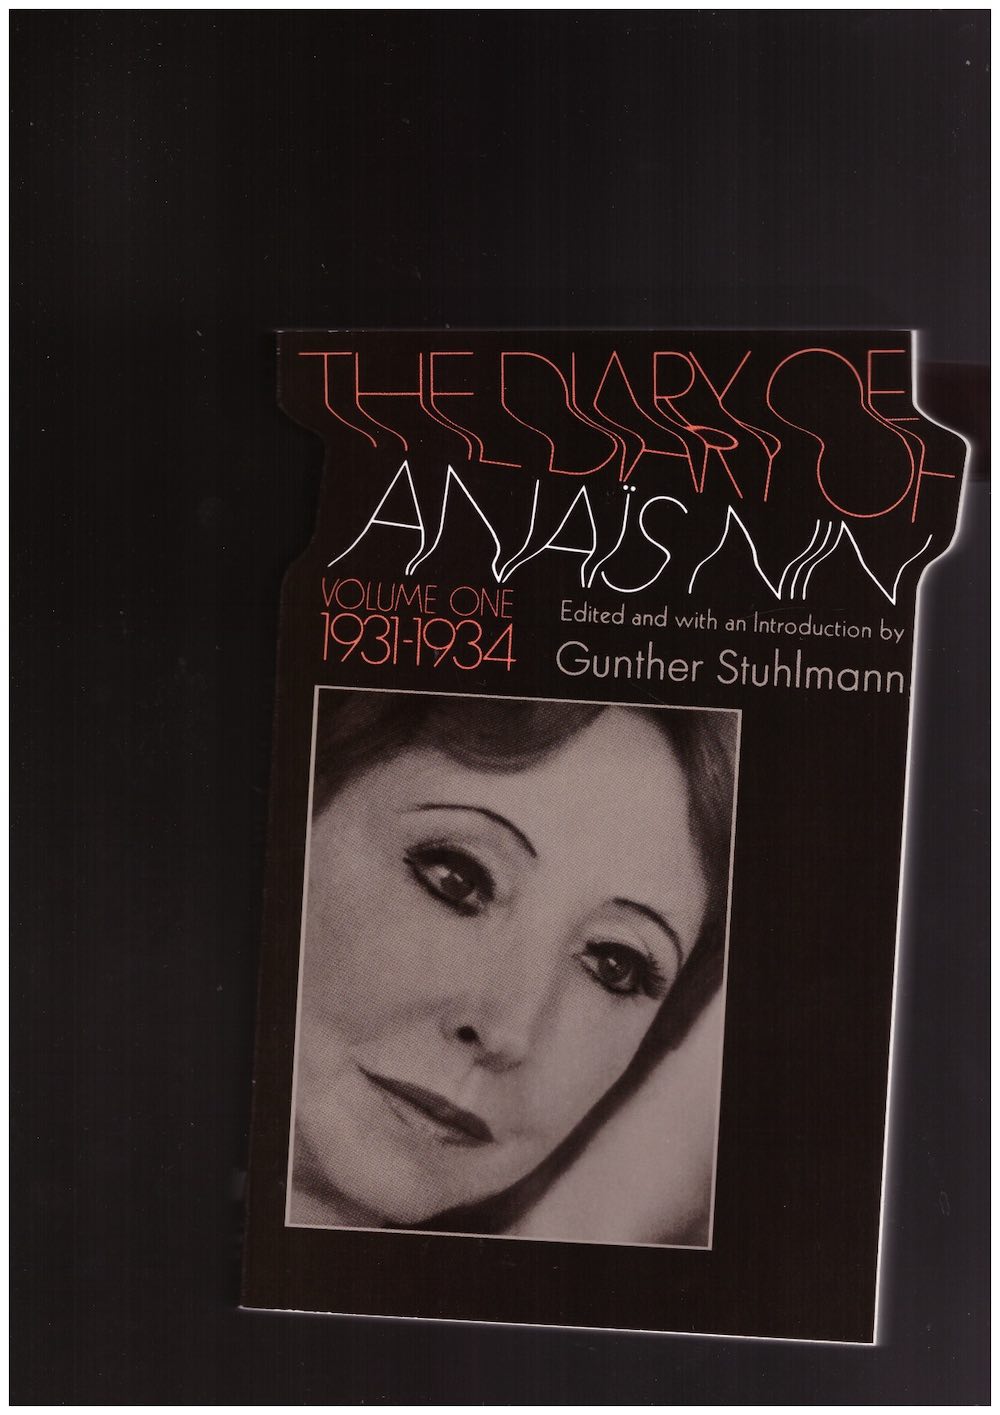 NIN, Anaïs - The Diary of Anaïs Nin, vol. 1: 1931-1934